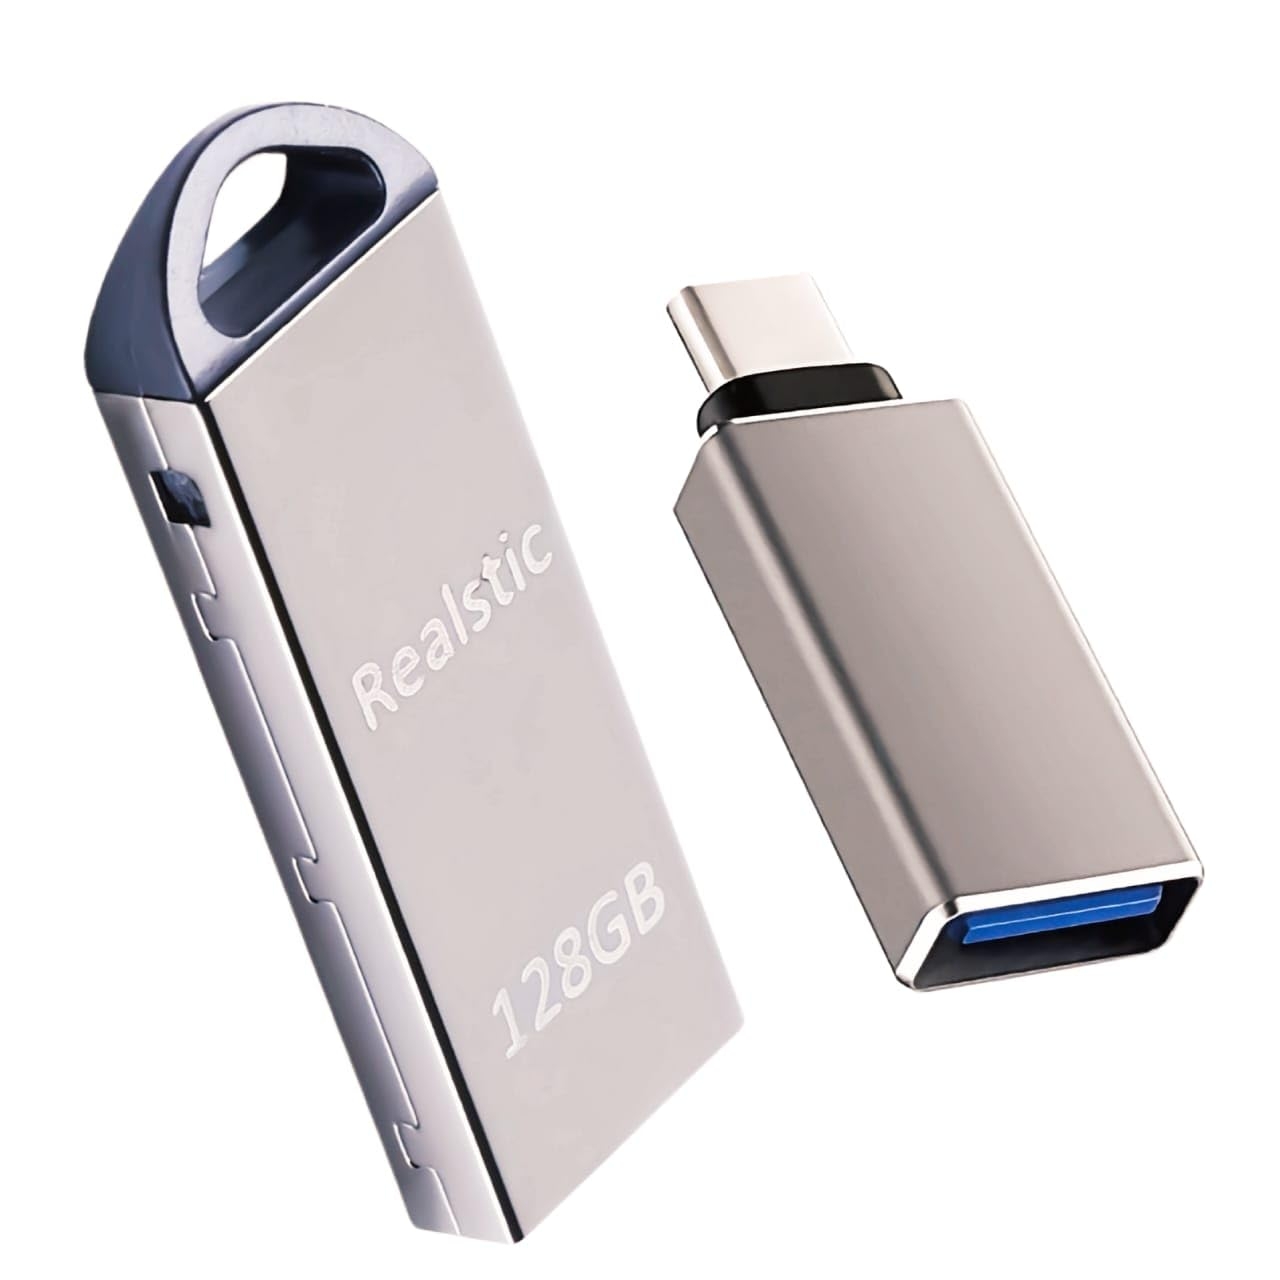 Realstic USB 2.0 Flash Drive 128GB, 128 gb Pendrive 128 GB Flash Drive